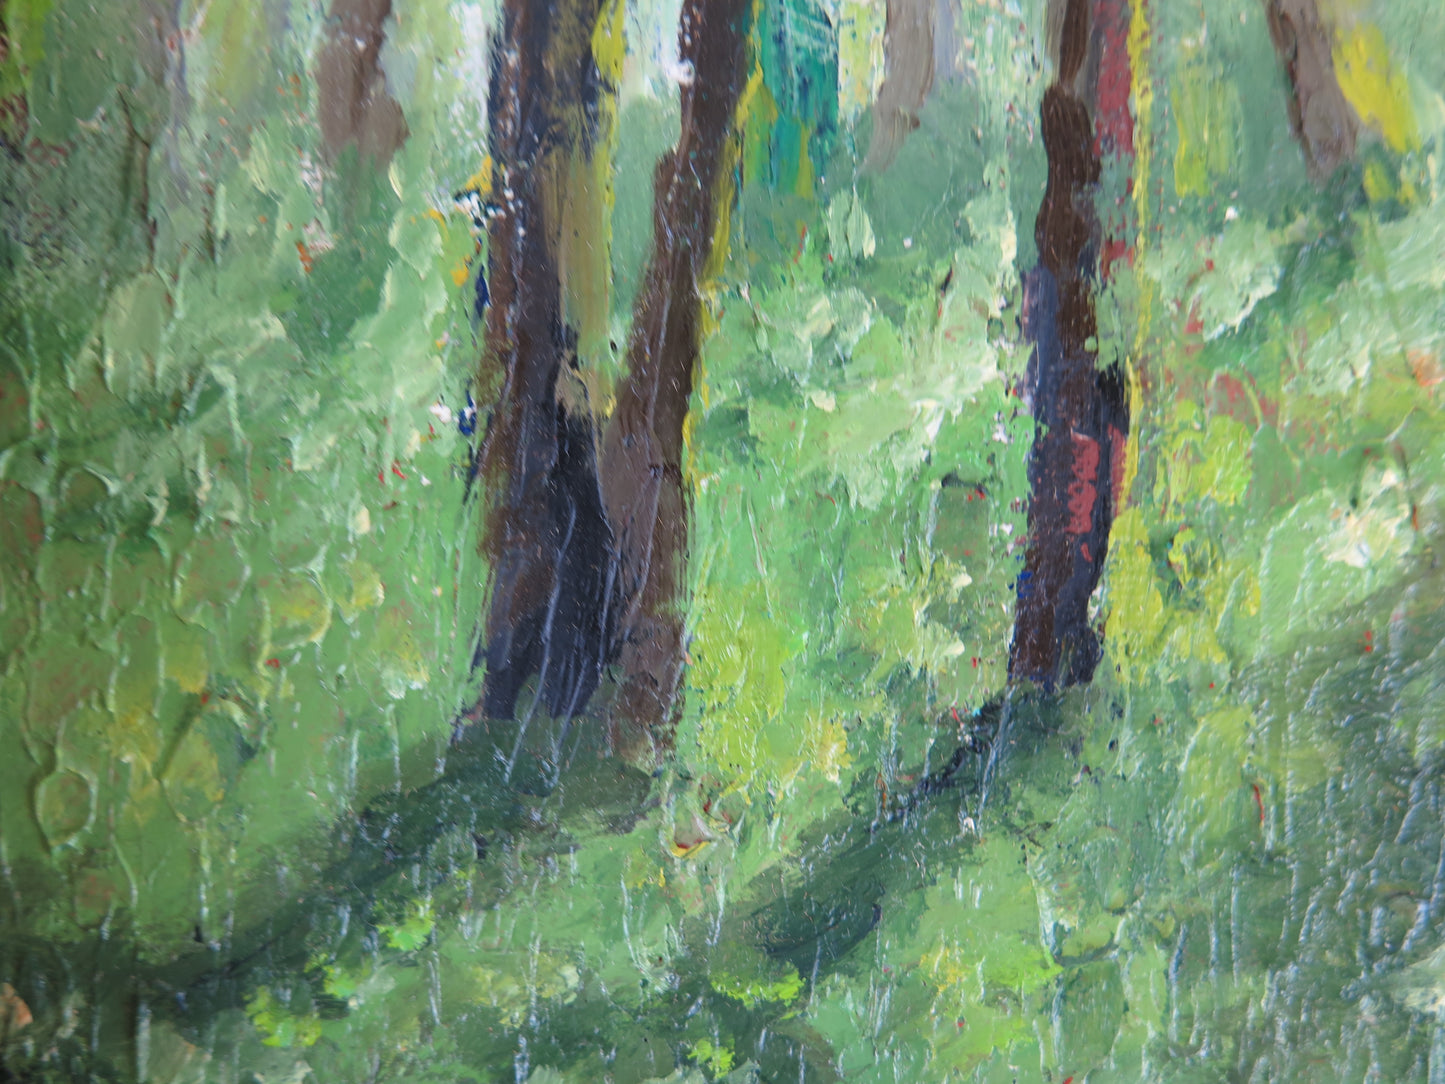 Quadro ad olio firmato Poggio opera del pittore piemontese Giacomo Poggio anni '60 paesaggio boschivo verde intenso X1